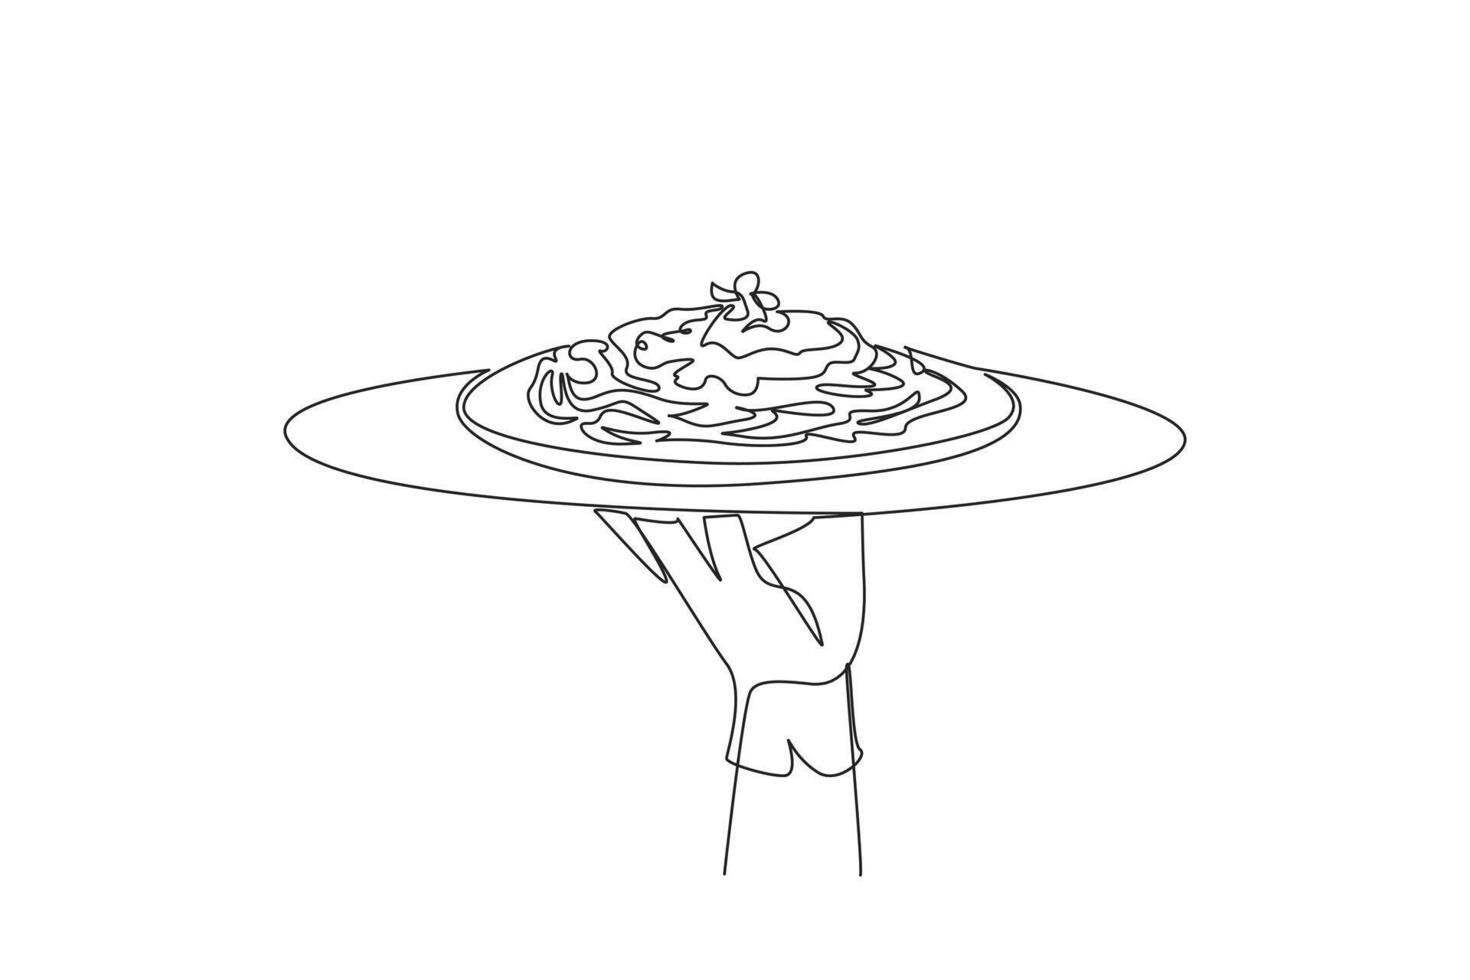 single doorlopend lijn tekening de ober houdt een voedsel dienblad portie spaghetti. een type van pasta dat is lang, dun en lijkt op noedels. typisch Italiaans voedsel. een lijn ontwerp illustratie vector